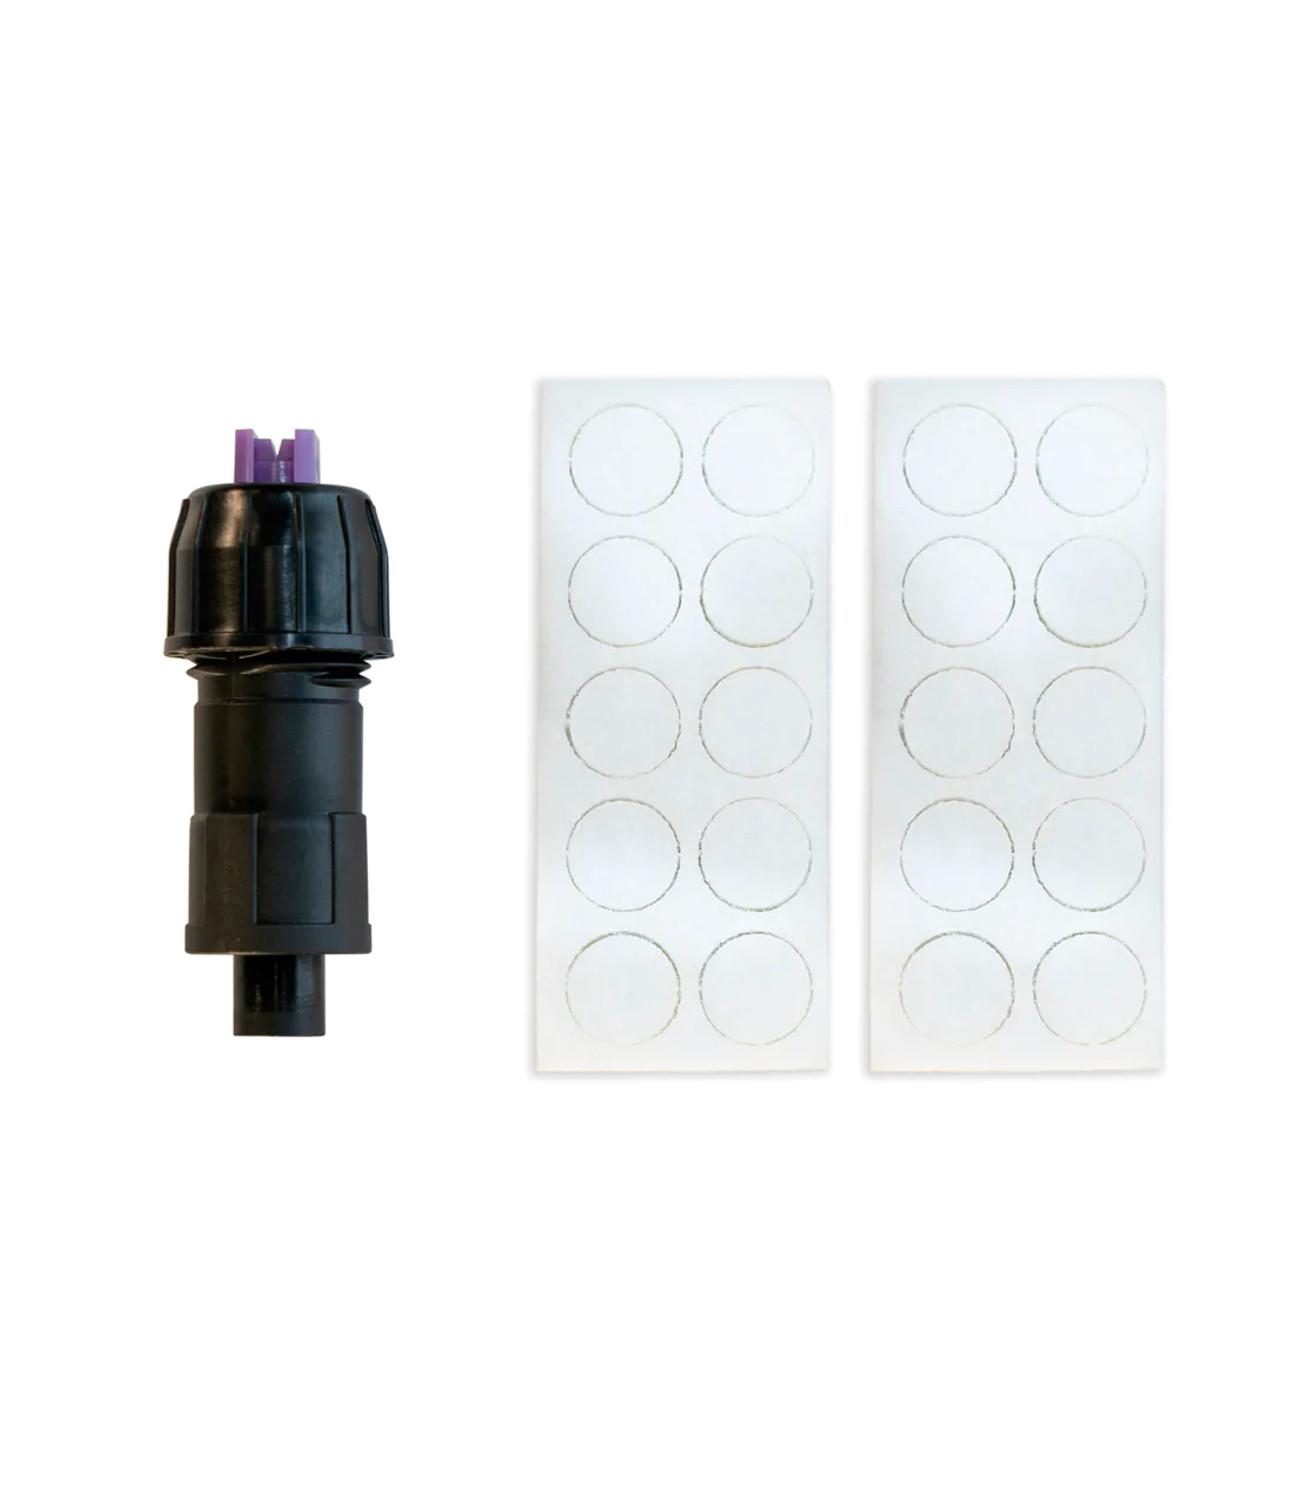  IK Pump Multi & Foam Sprayer PRO 2 Combo KIT (2-Pack) : Patio,  Lawn & Garden